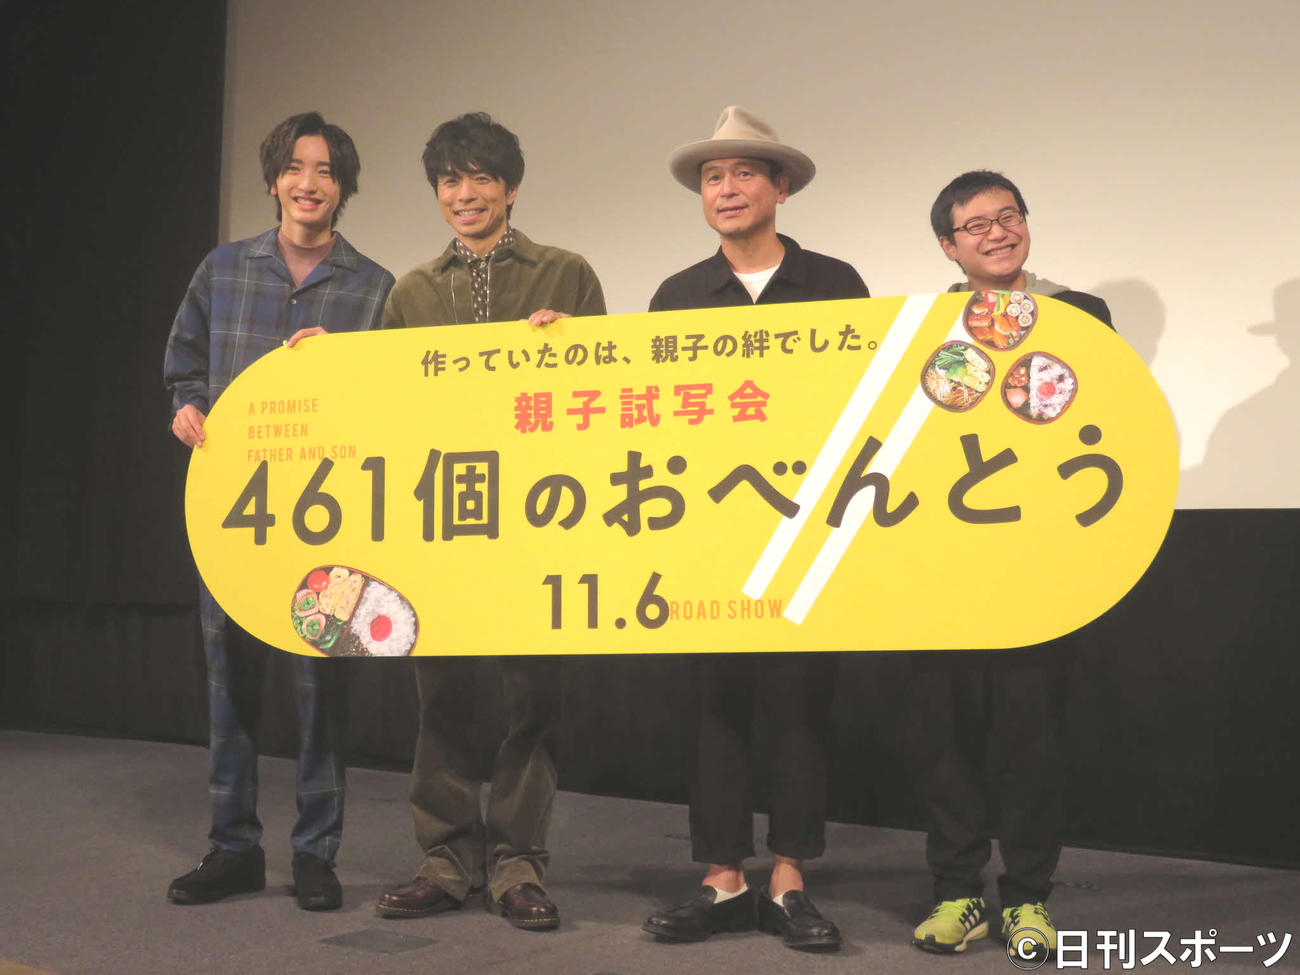 映画「461個のおべんとう」の親子試写会イベントに出席した、左から道枝駿佑、井ノ原快彦、原作者の渡辺俊美、息子の登生さん